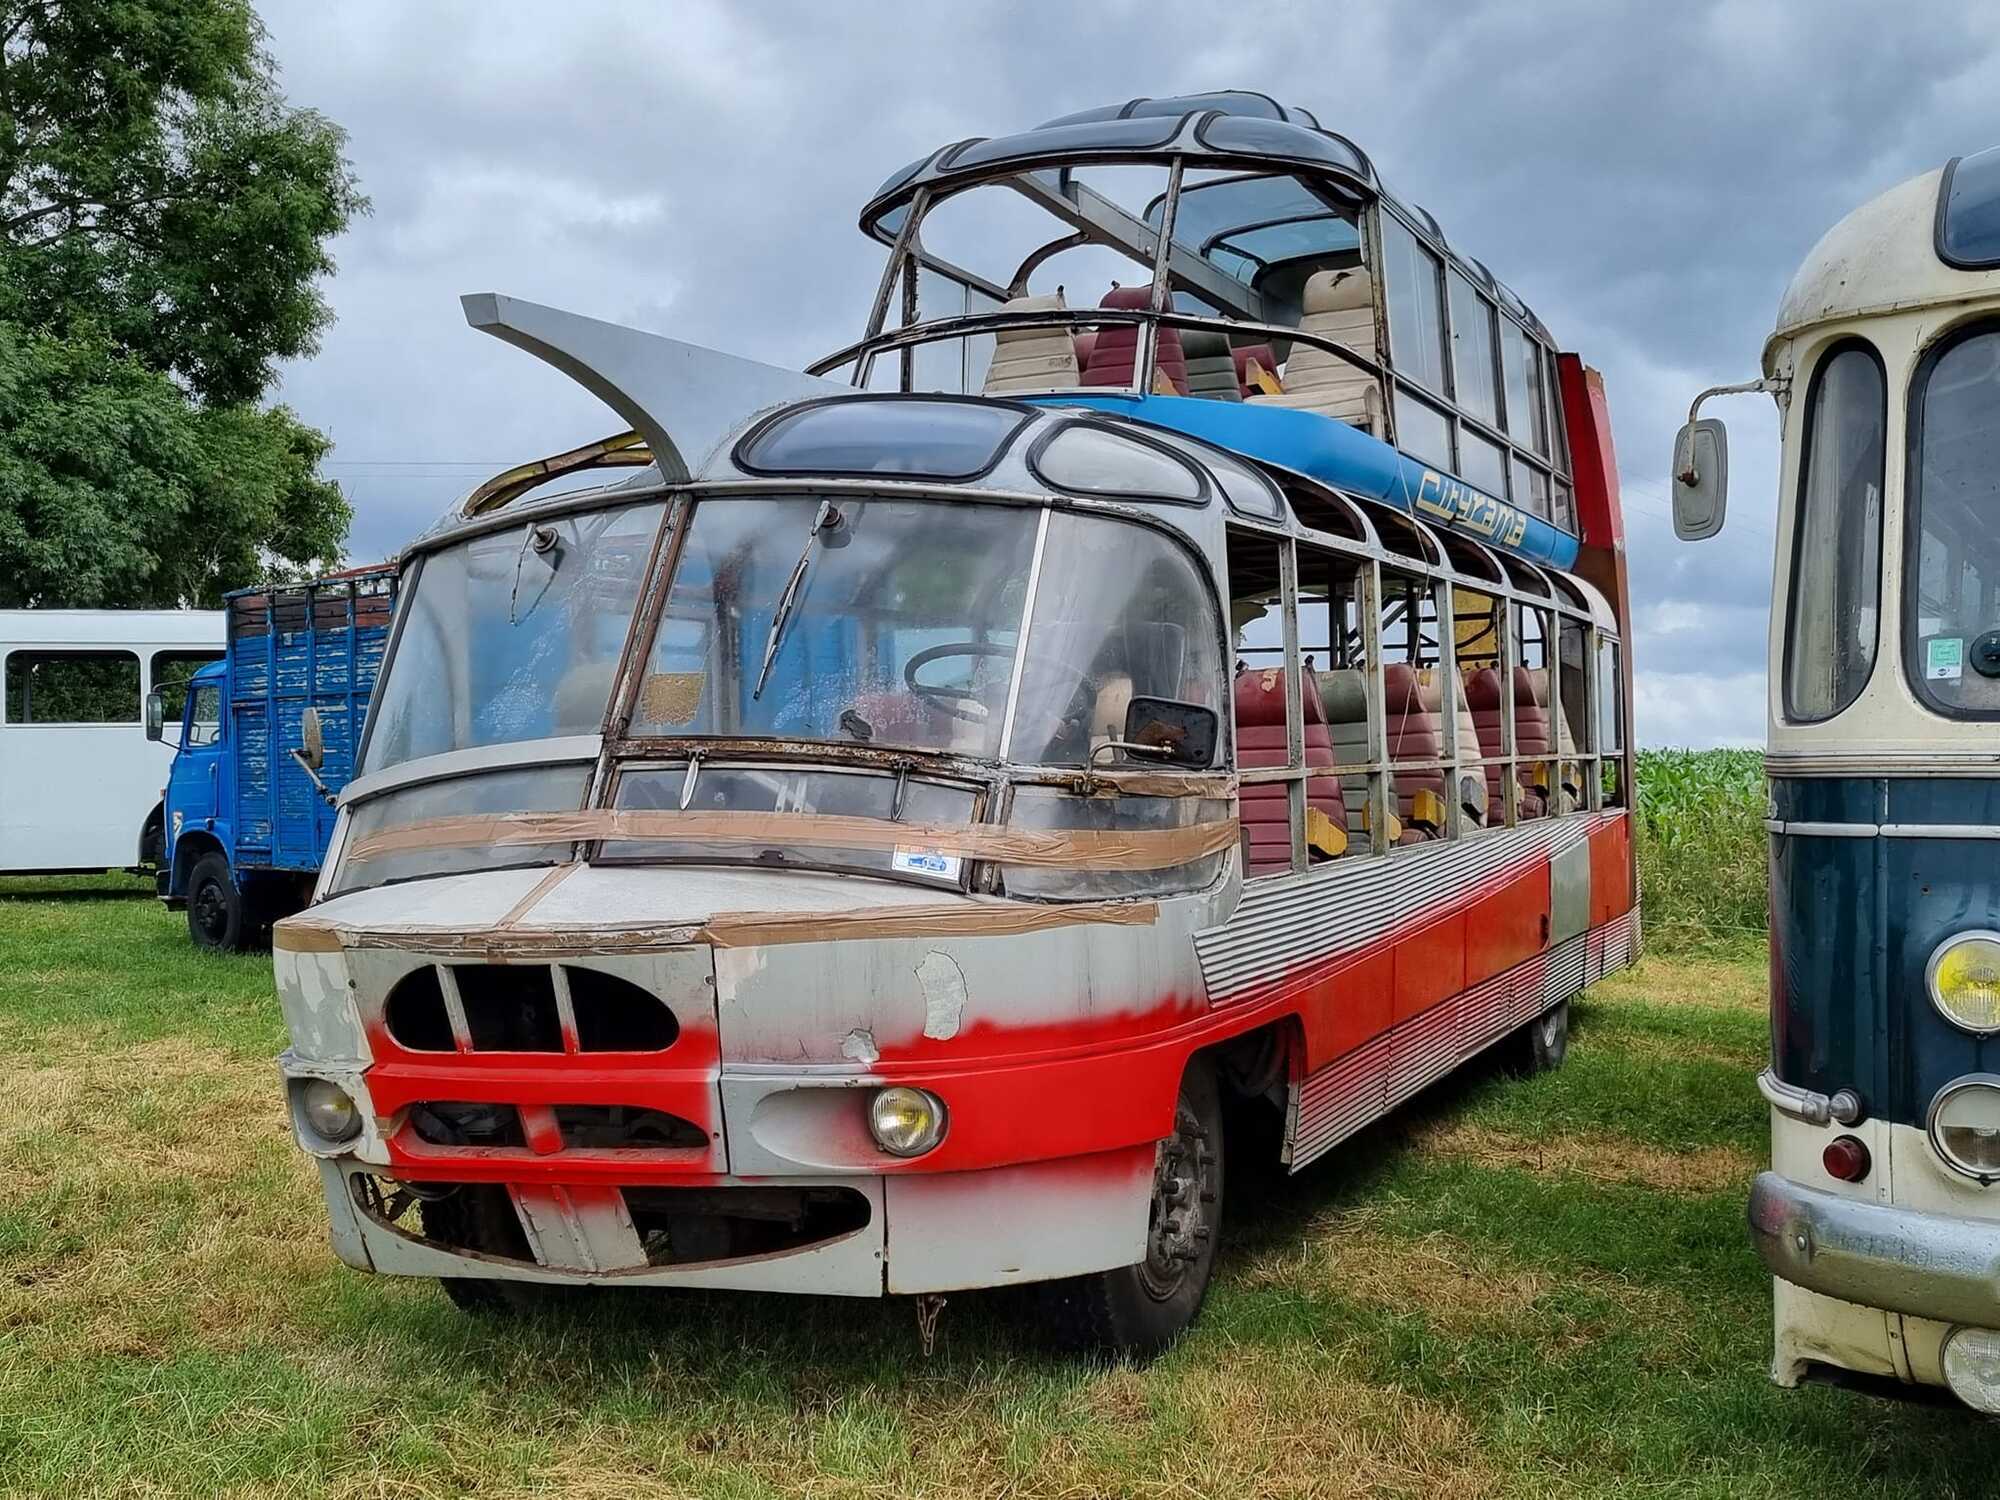 Після довгих років забуття автобус потребує серйозної реставрації